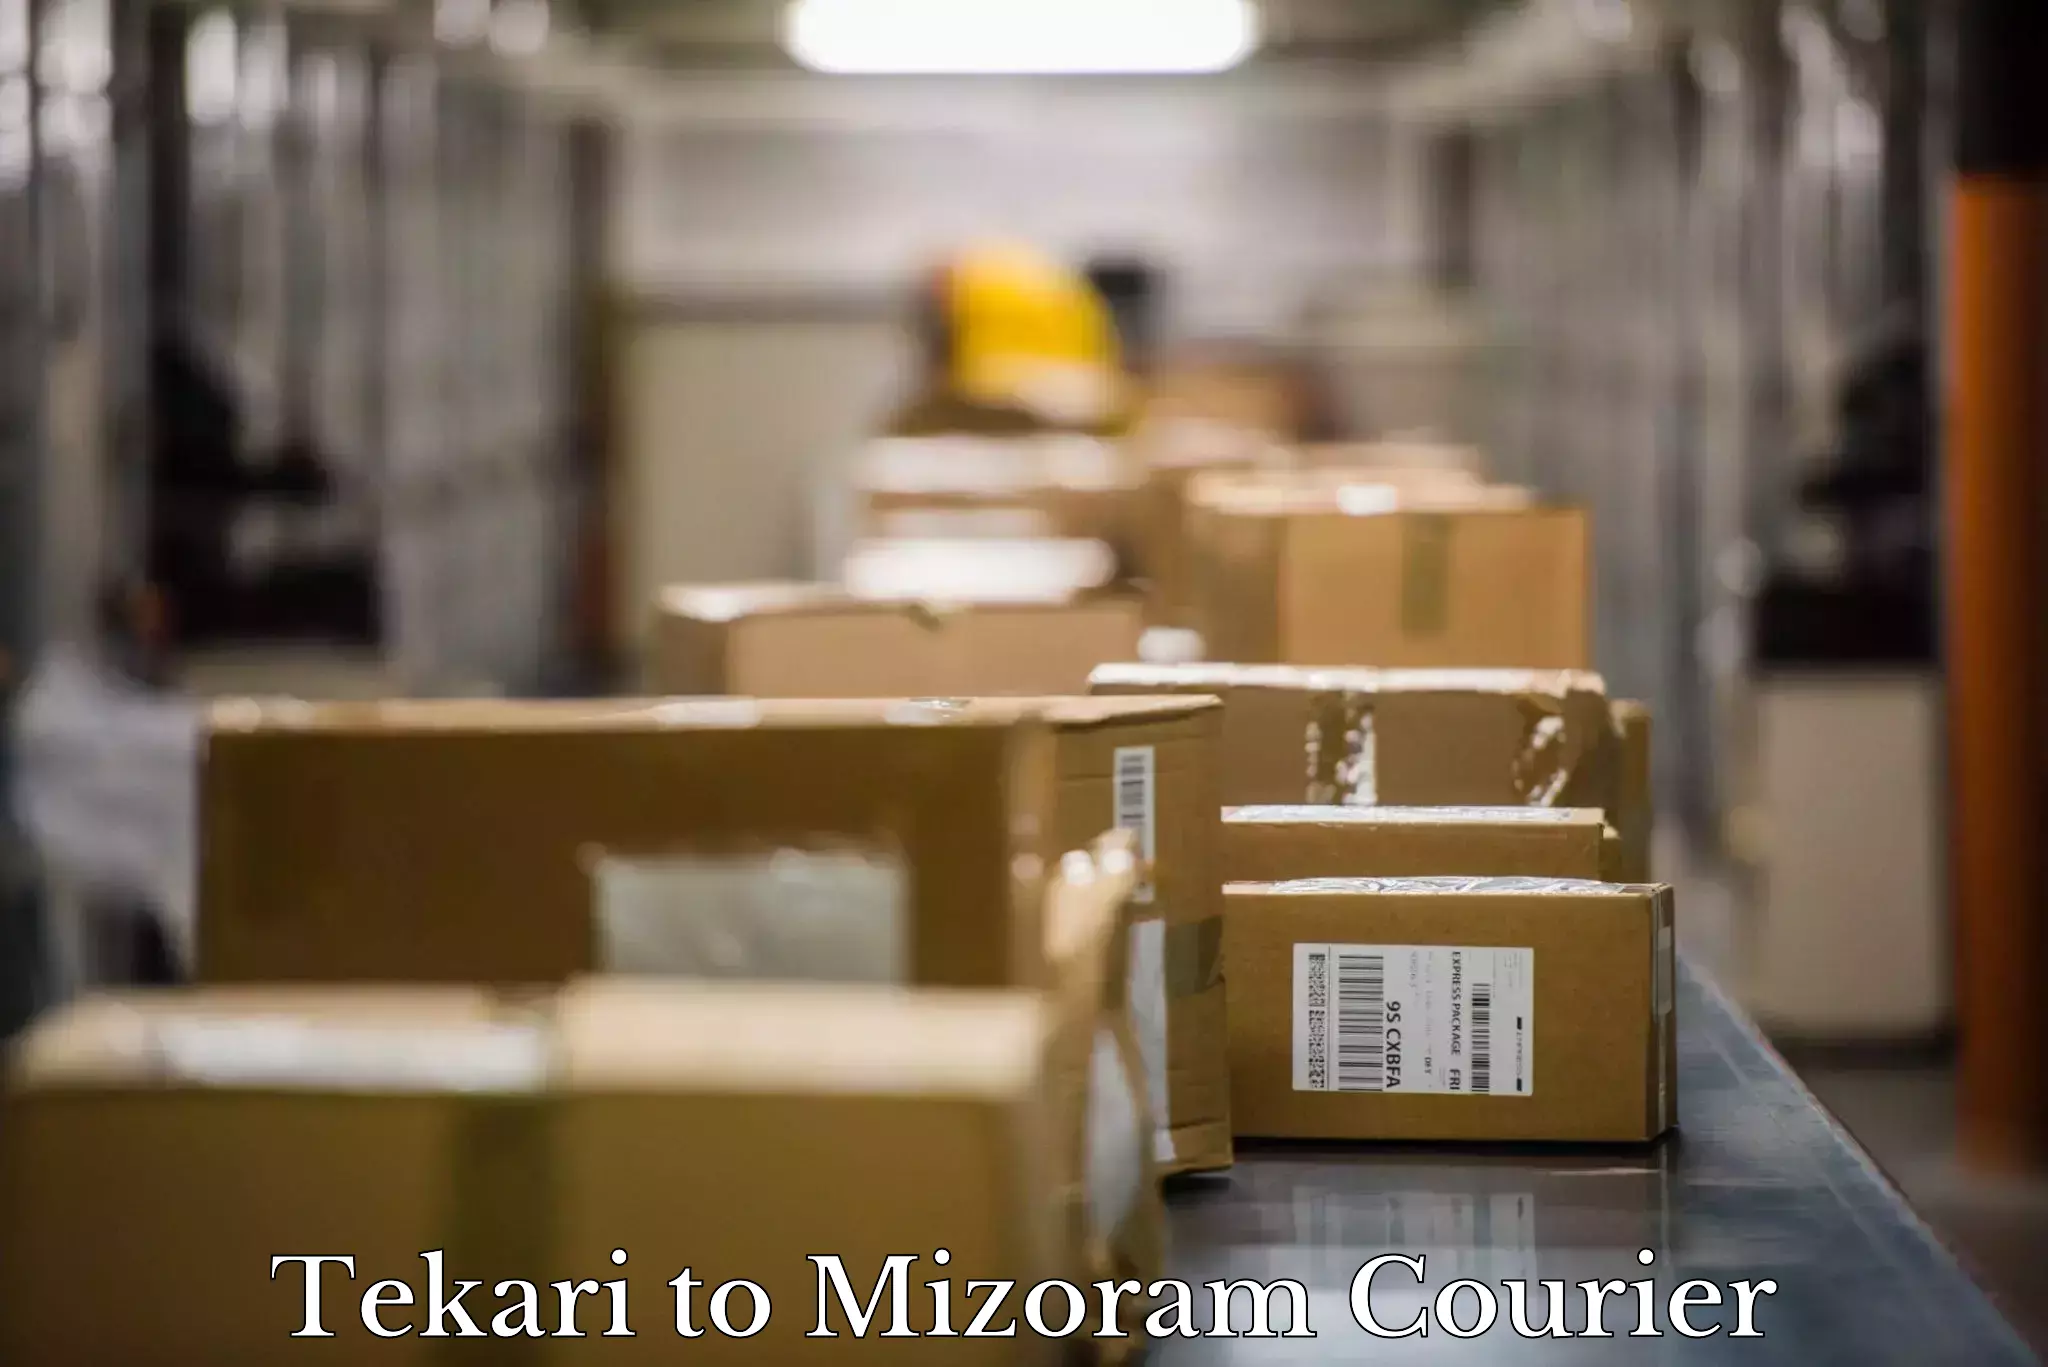 Expert household movers Tekari to Mizoram University Aizawl